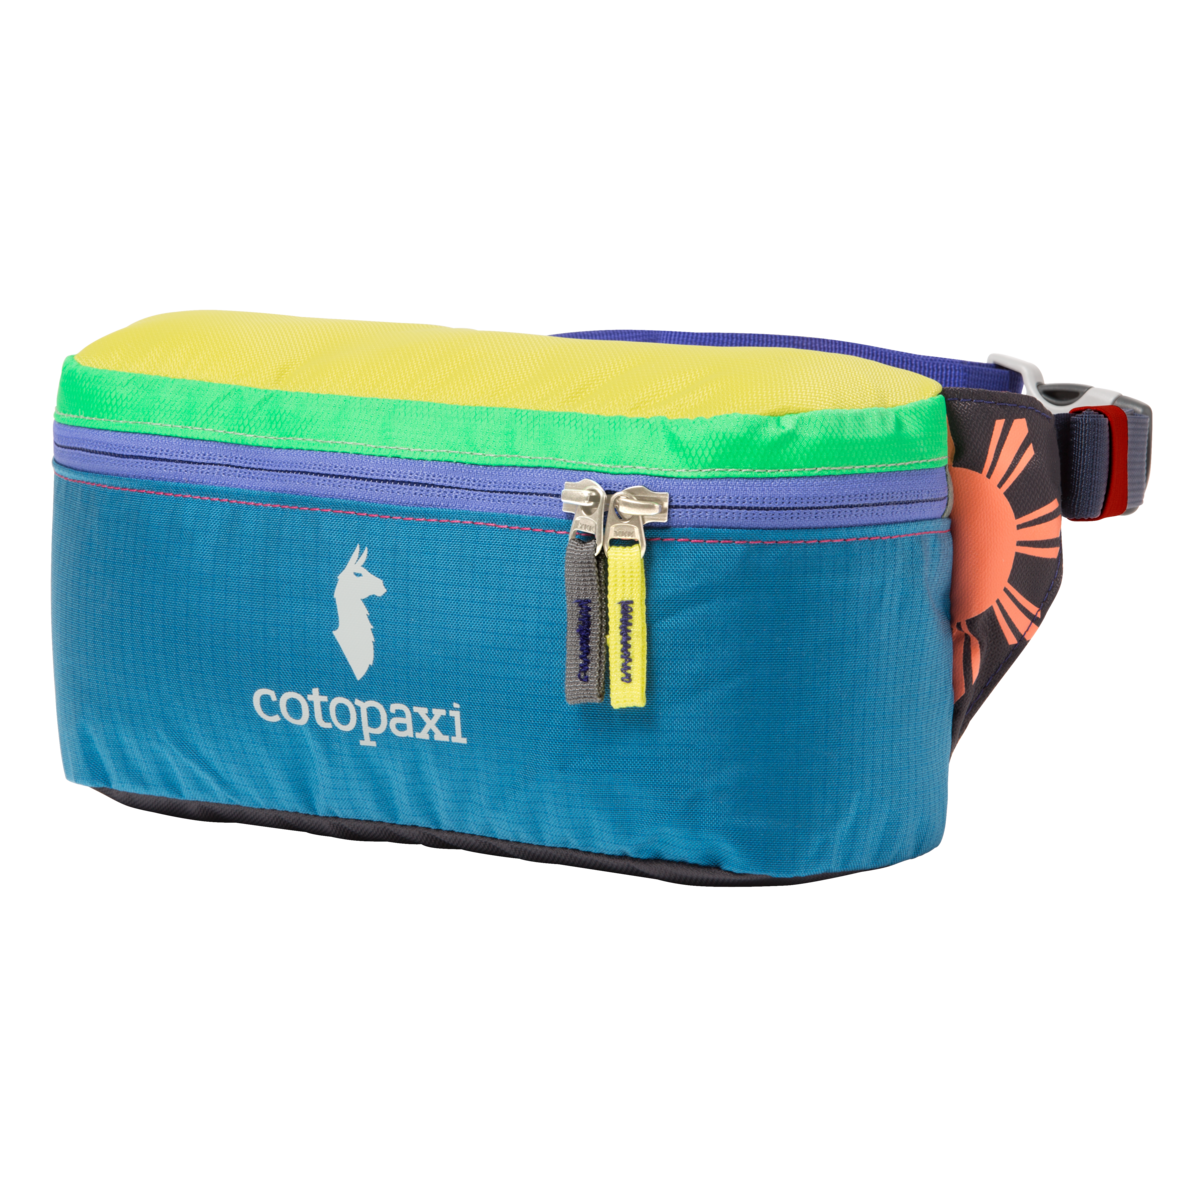 Cotopaxi Bataan 3L Fanny Pack - Hip bag